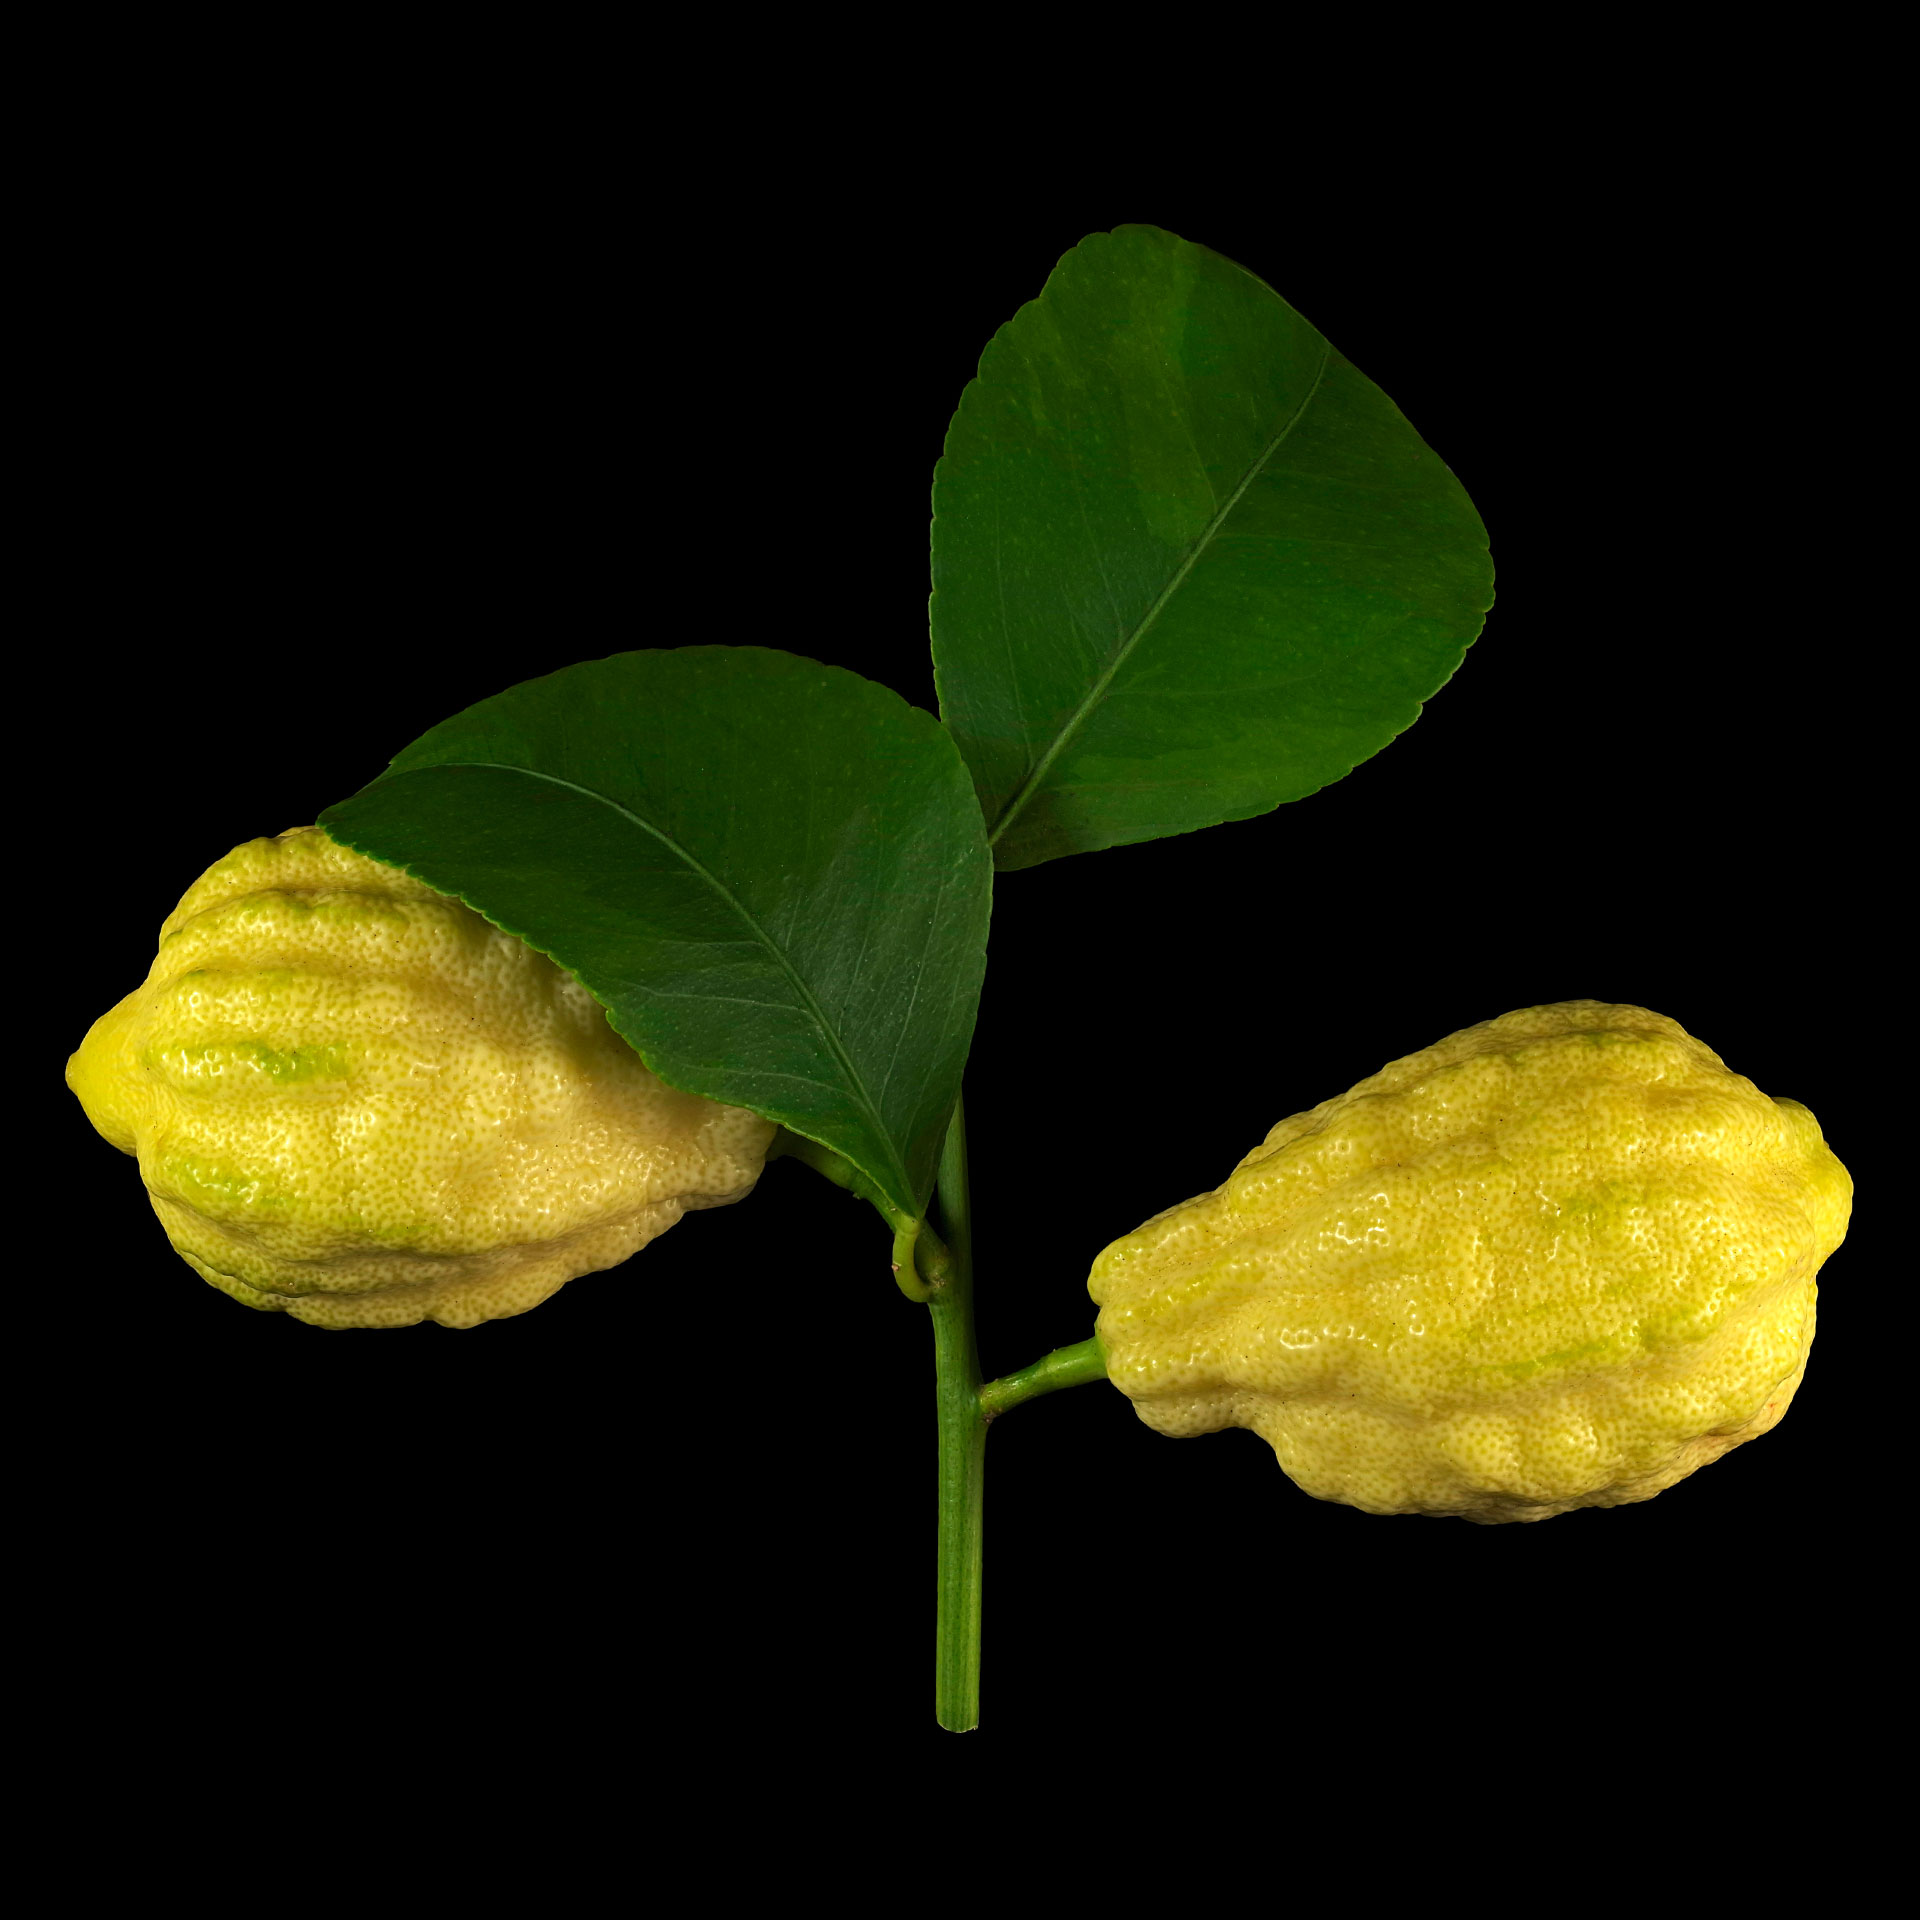 Die Gefurchte Zitrone: Citrus × limon ‚Canaliculata‘